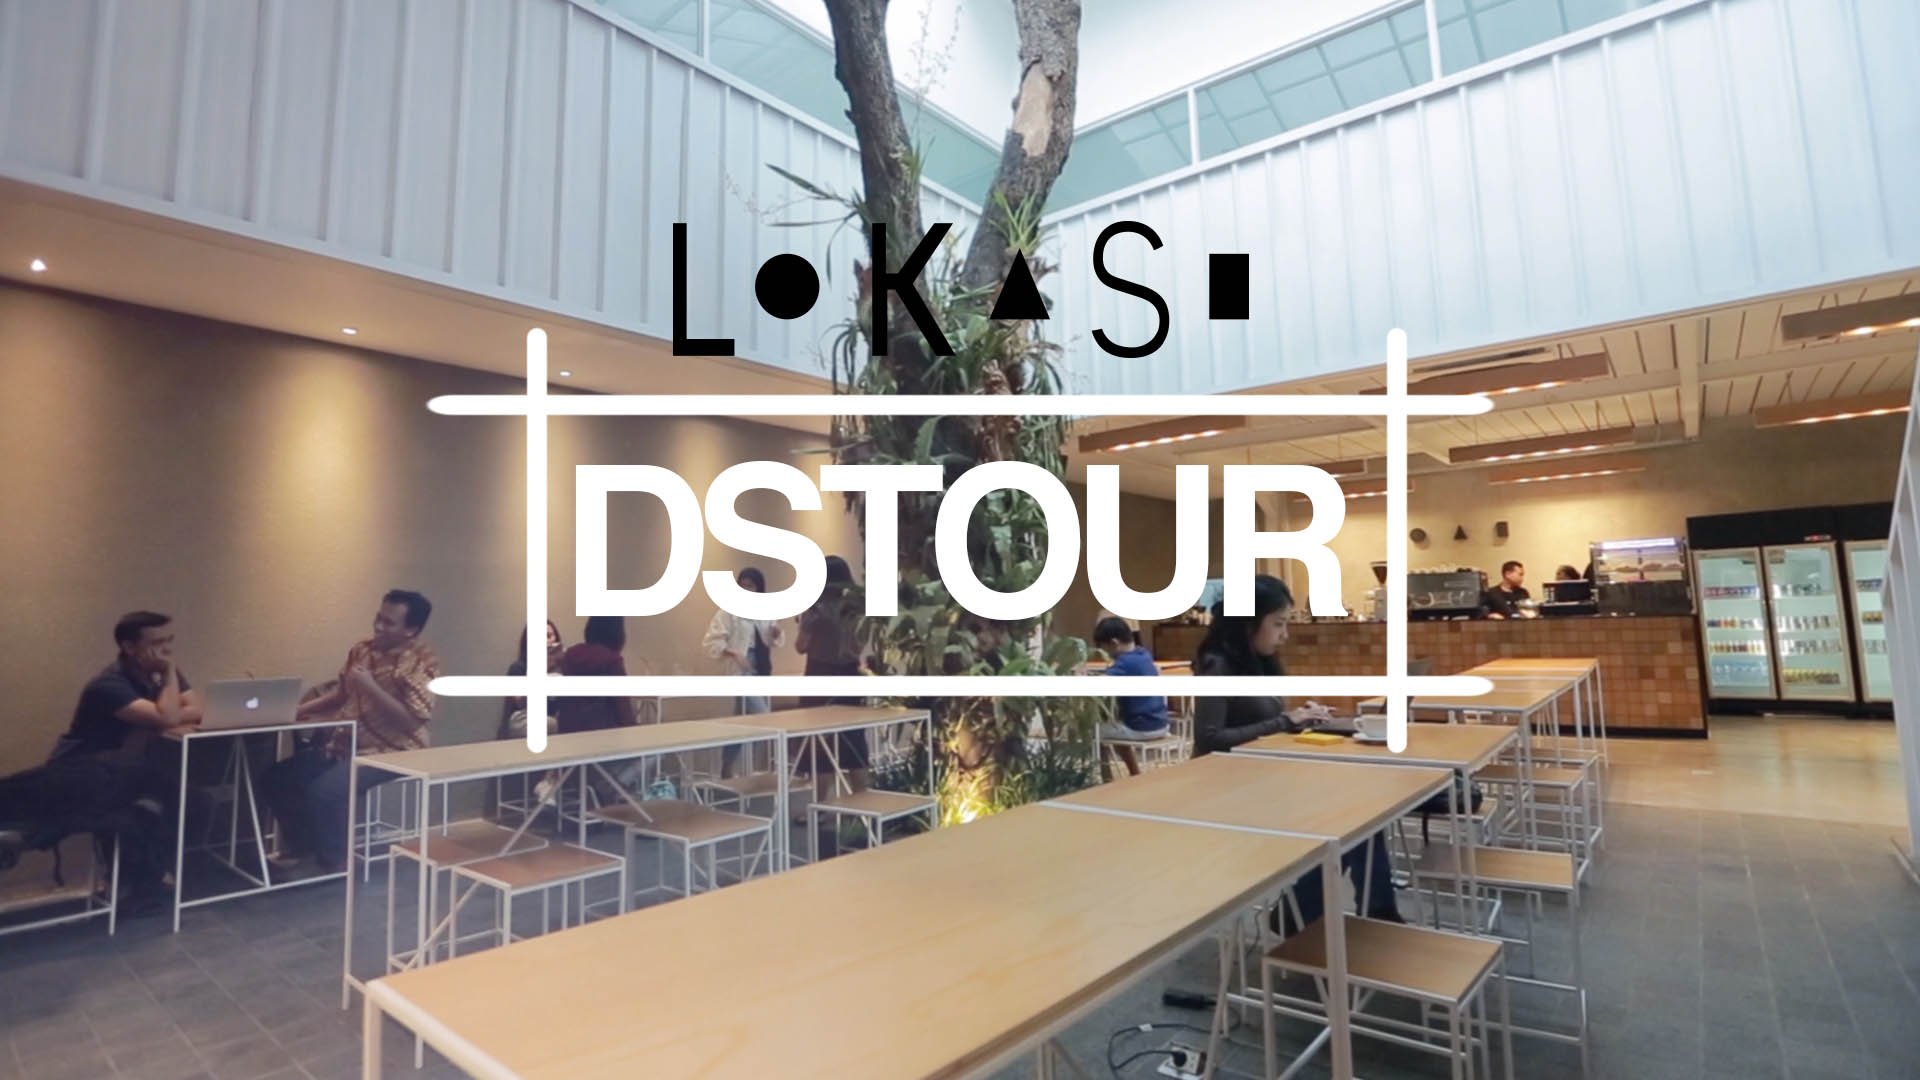 DStour #36: Mengunjungi Coworking Space "Lokasi" yang Memiliki Desain